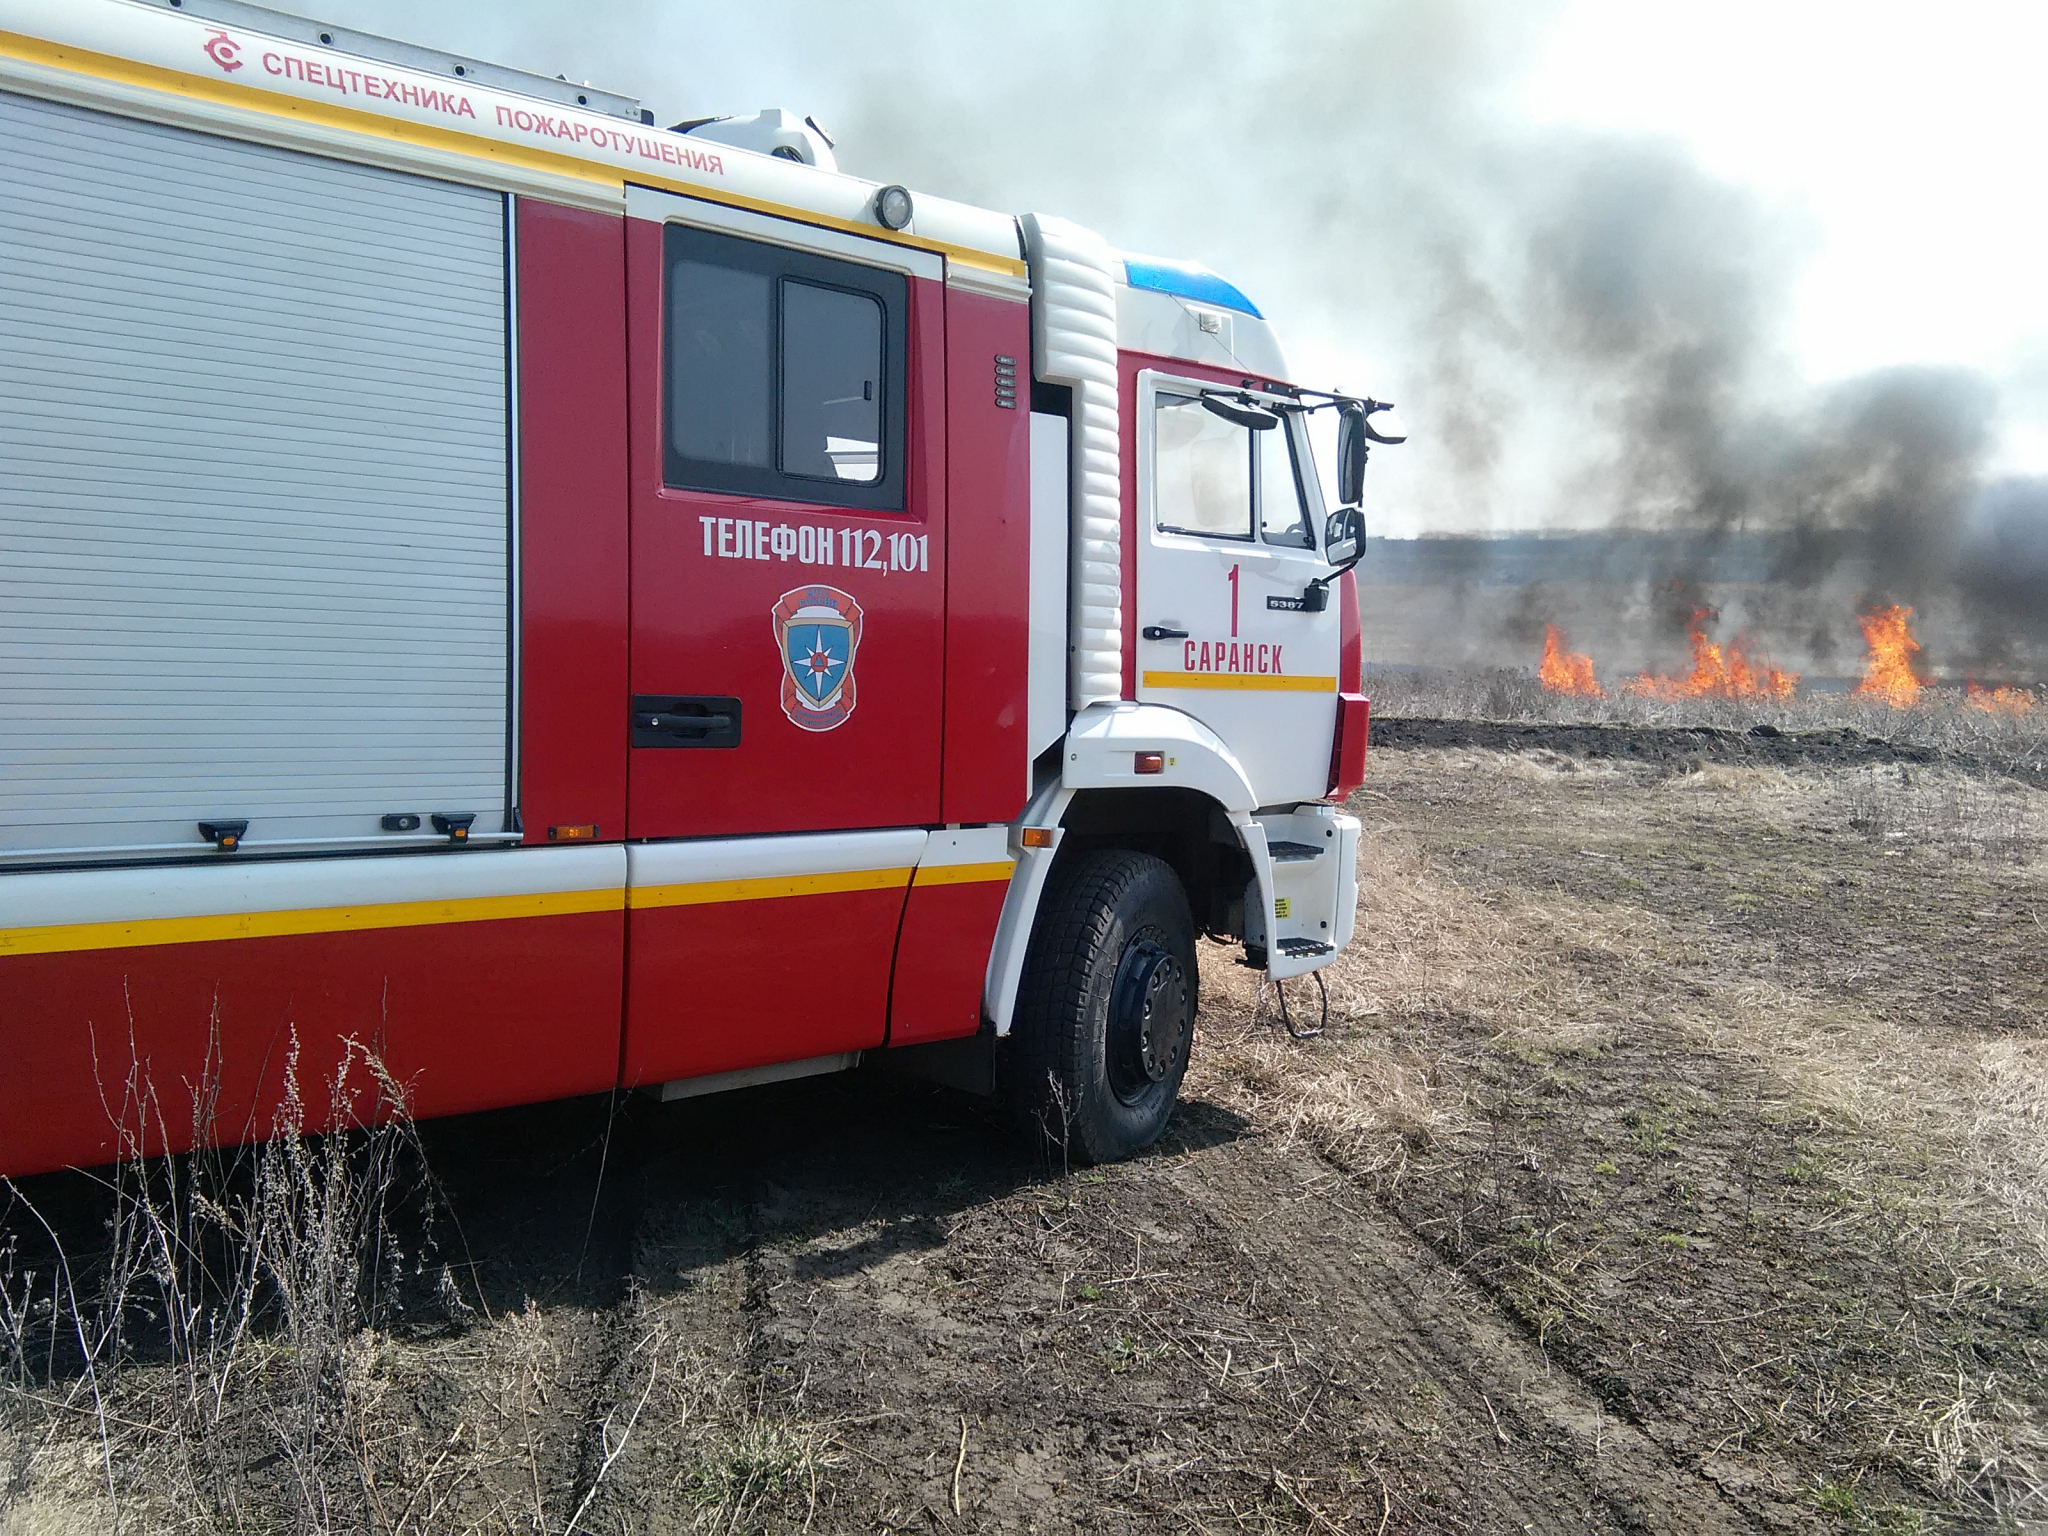 Опасность природных пожаров вынудила спасателей на патрулирование всех районов Мордовии